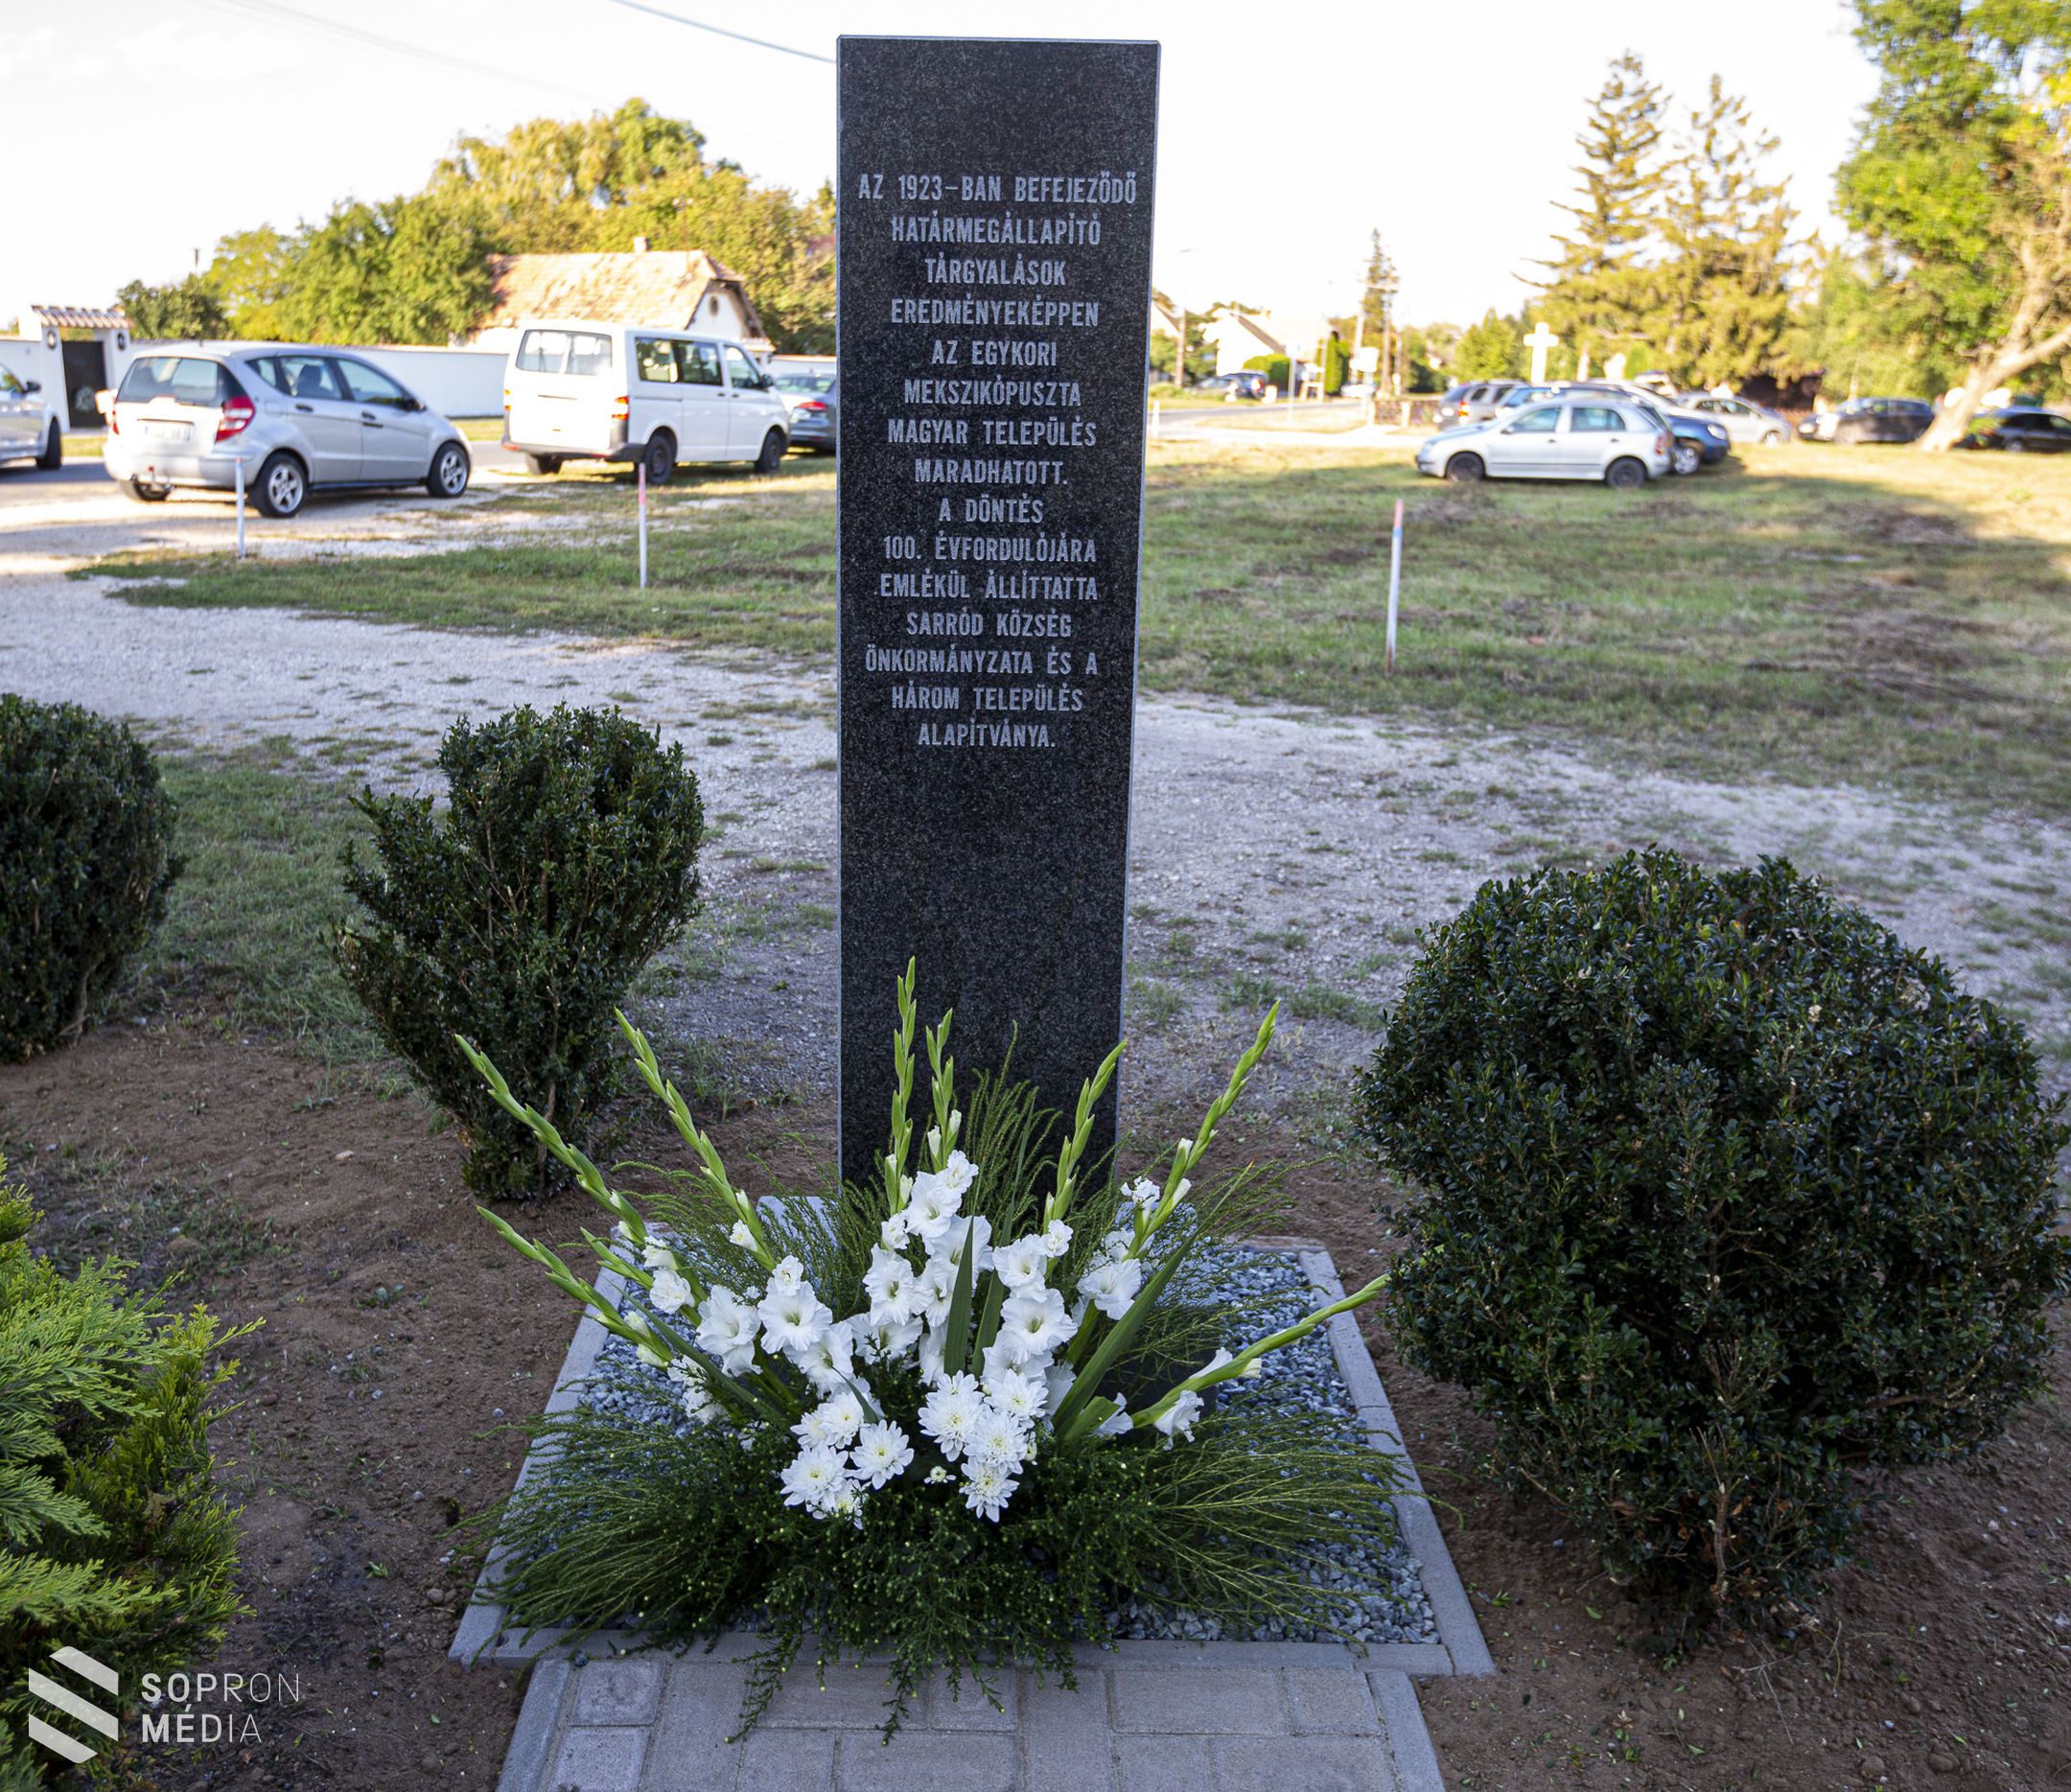 Magyar település maradhatott Mekszikópuszta - 100 éves évfordulóra emlékeztek